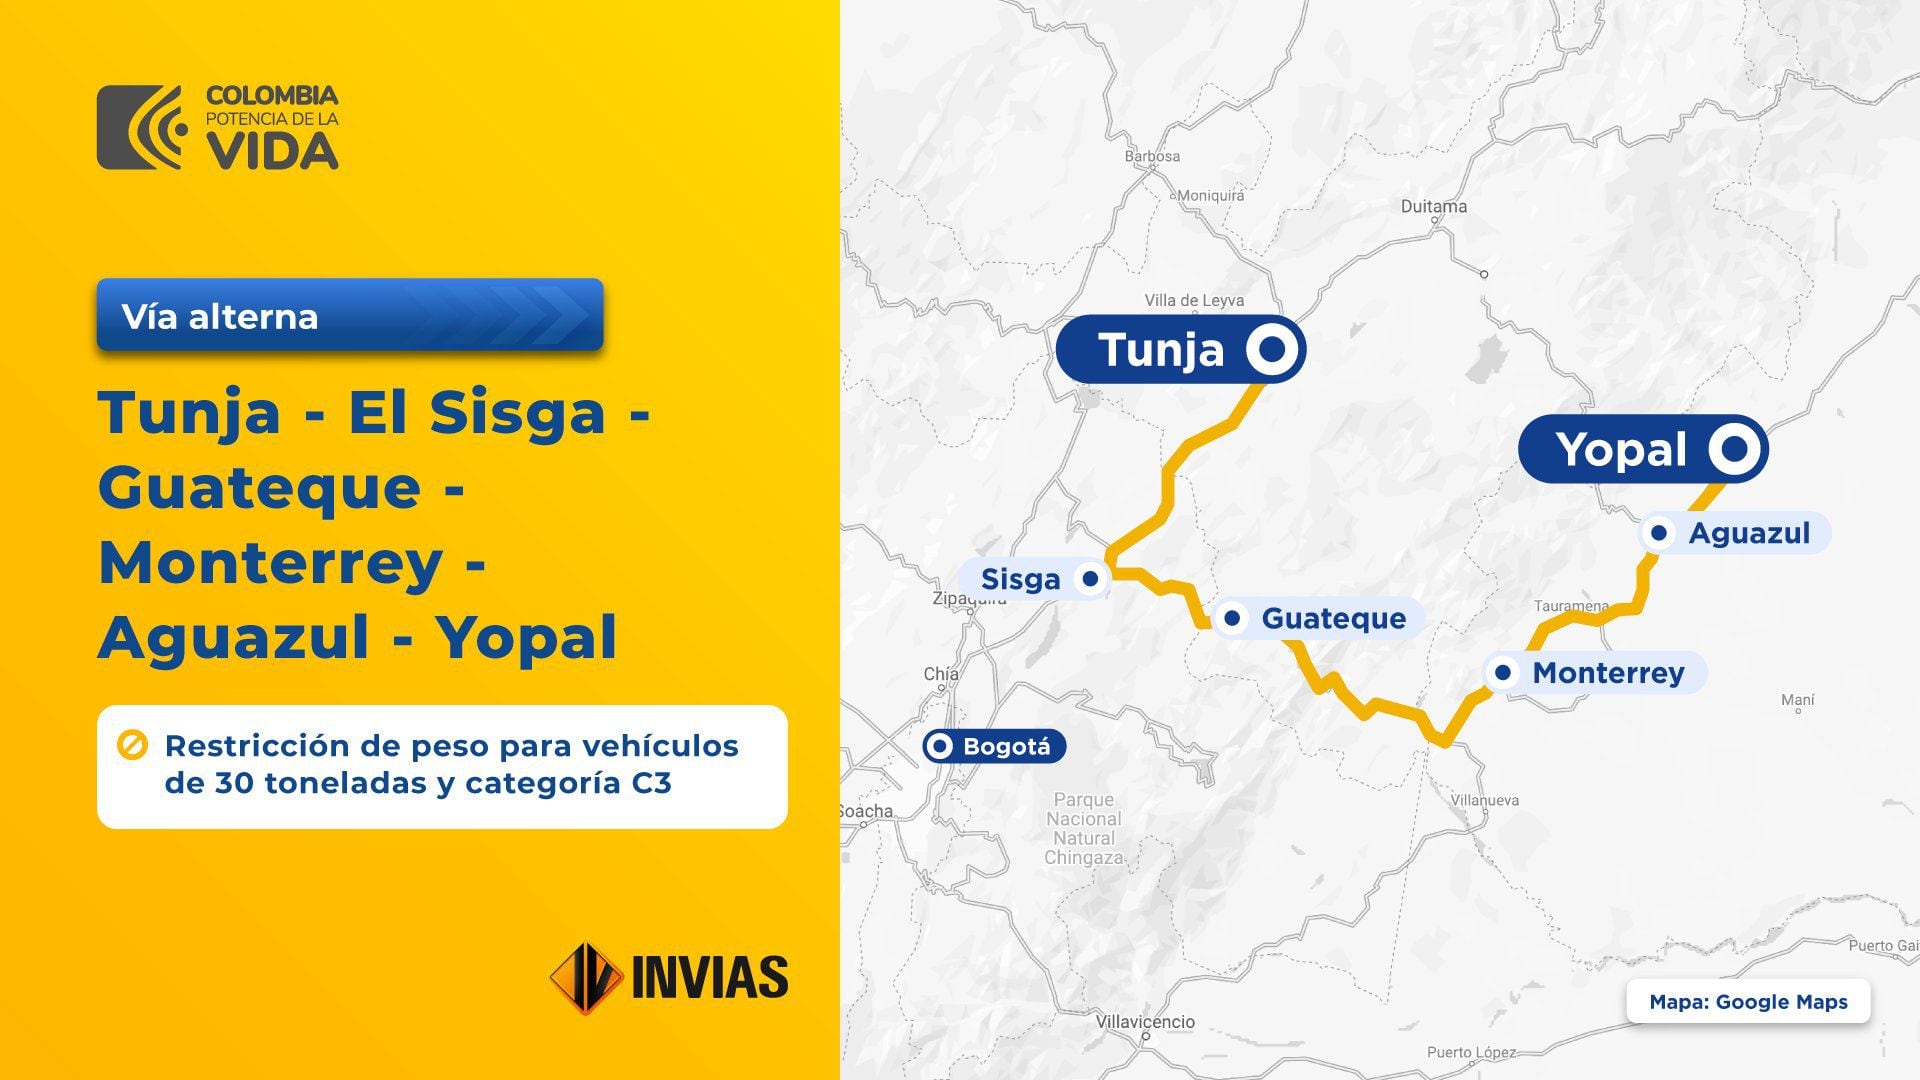 La Ruta 1 comprende desde Tunja - El Sisga - Guateque - Monterrey - Aguazul - Yopal, diseñada exclusivamente para vehículos de máximo tres ejes y con un límite de 30 toneladas - crédito @InviasOficial/X